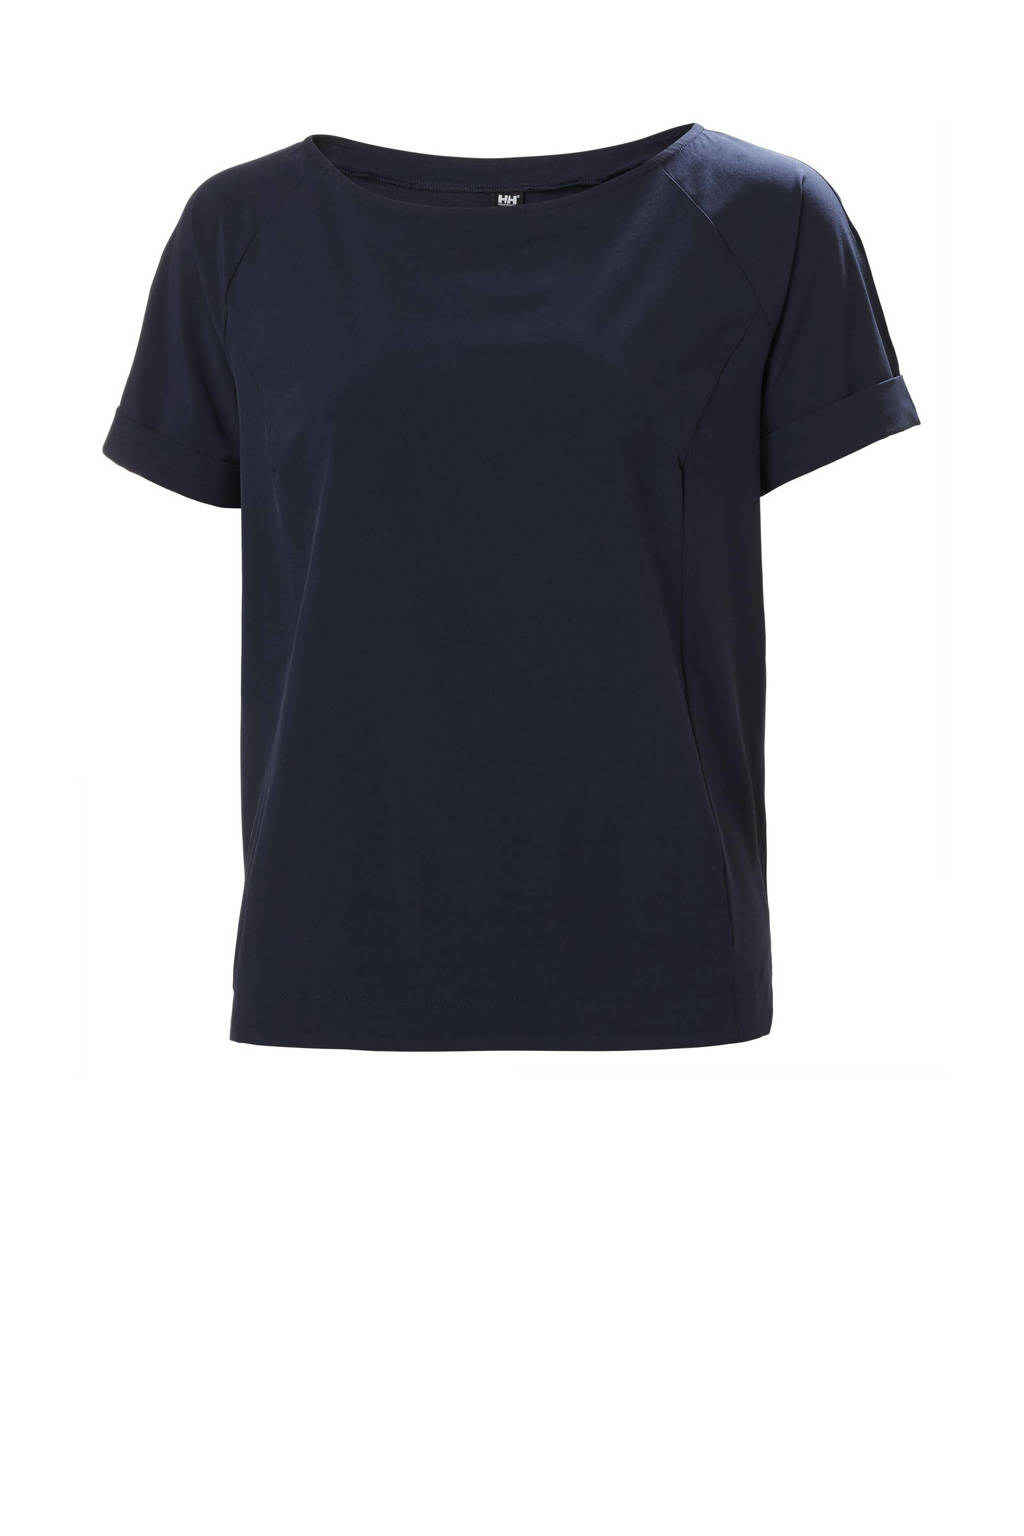 Helly Hansen T-shirt donkerblauw